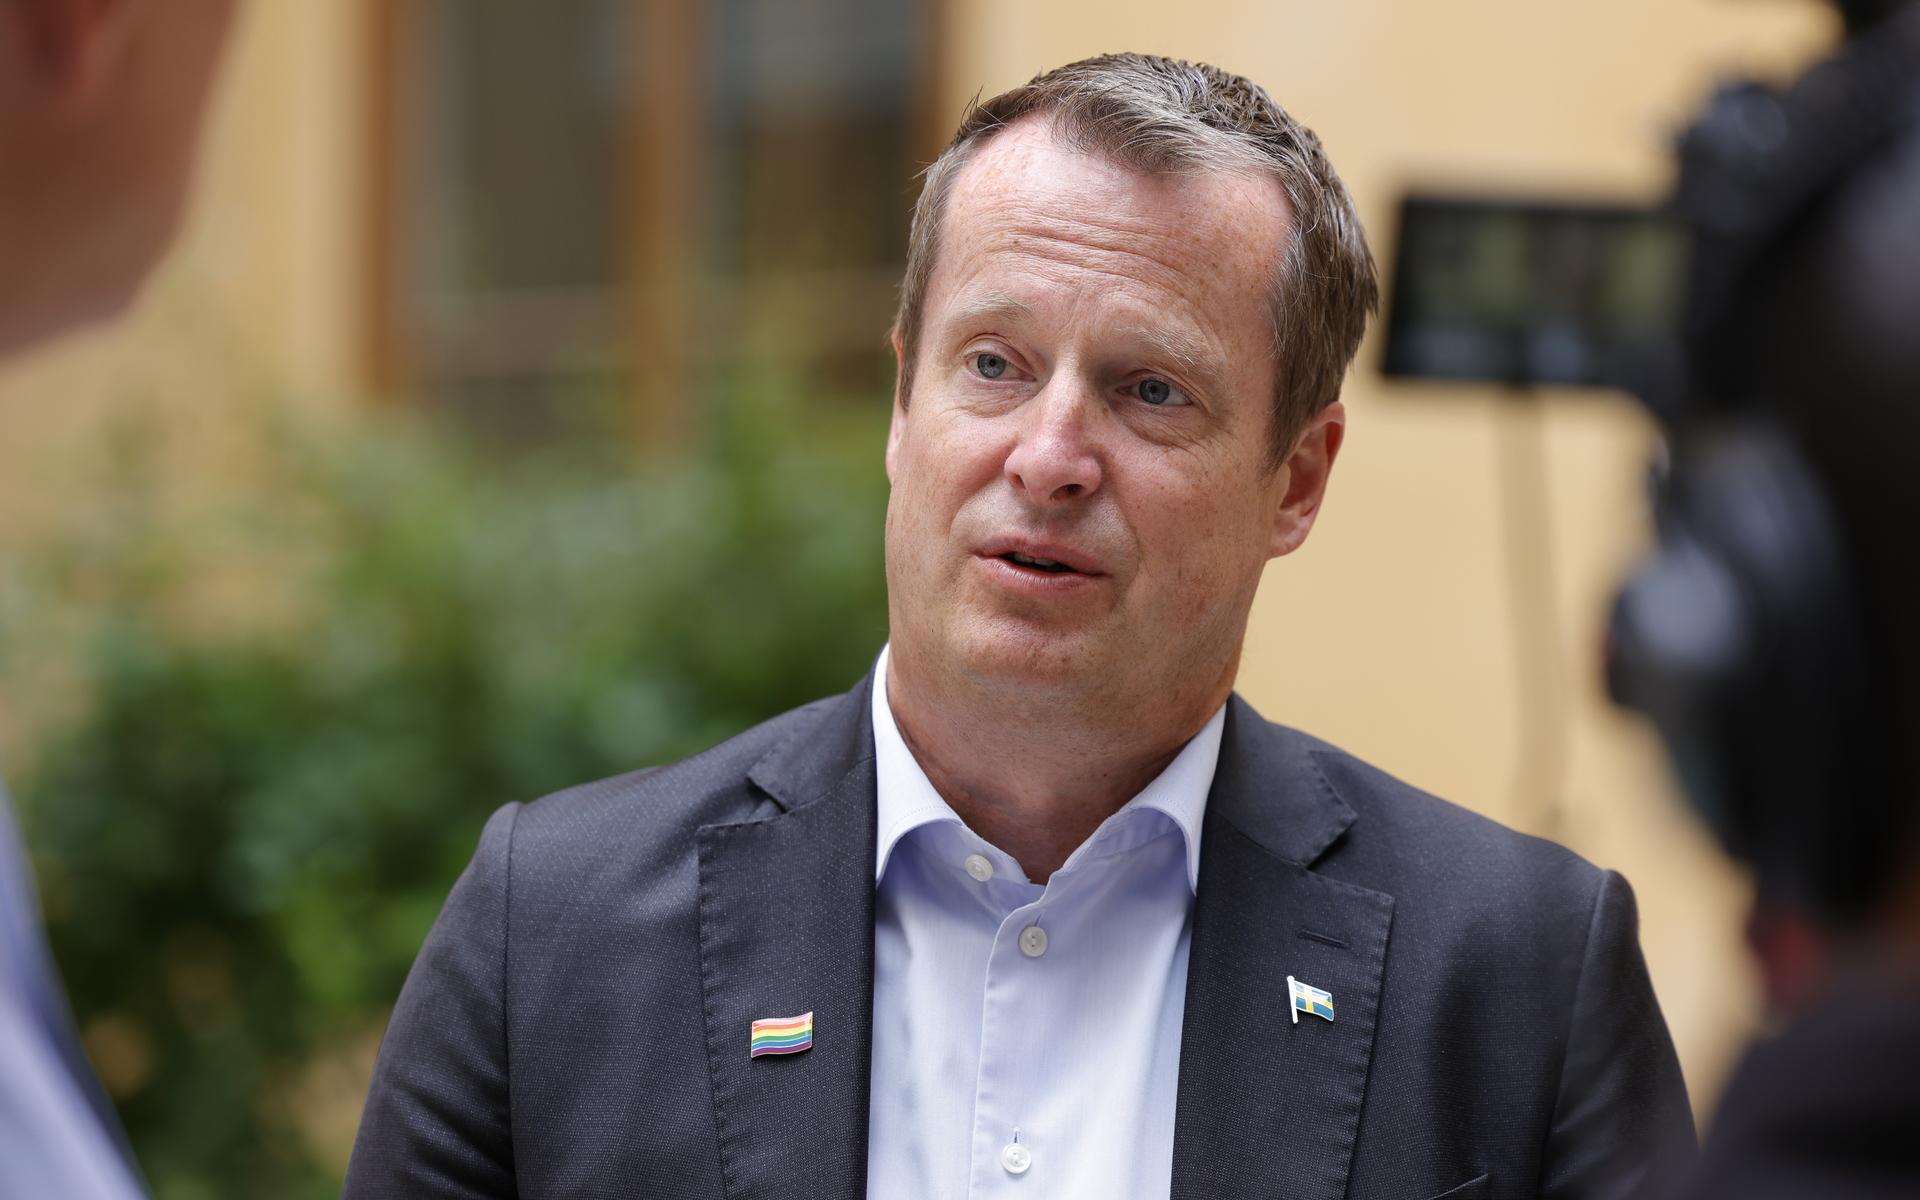 Nu öppnar energi- och digitaliseringsminister Anders Ygeman (S) för att Sveriges elområden kan komma att förändras.